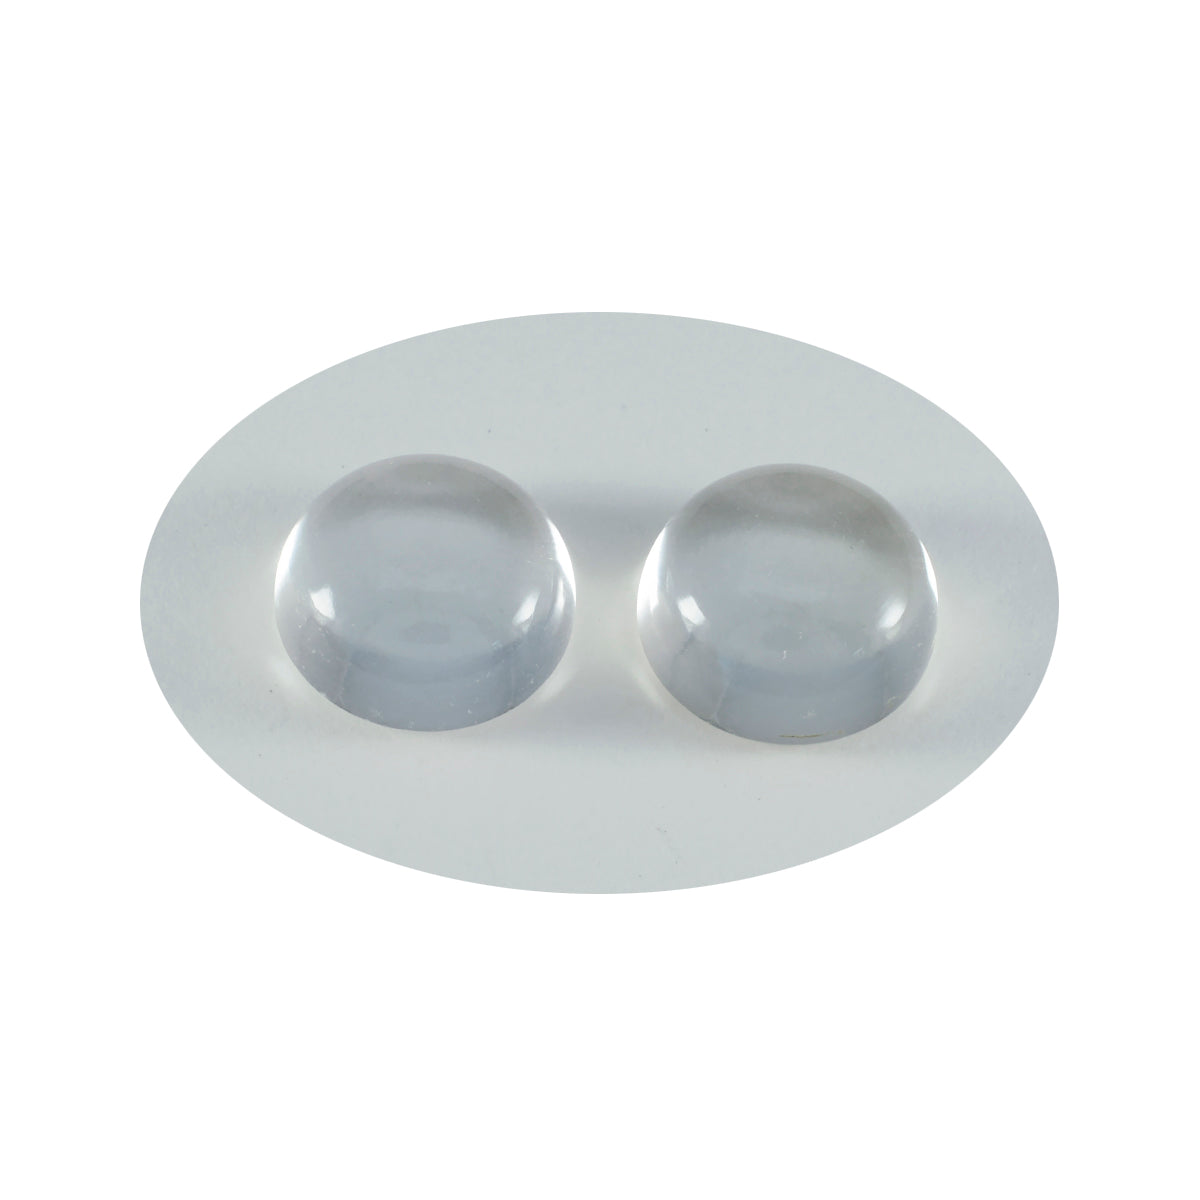 Riyogems 1pc cabochon de quartz en cristal blanc 12x12mm forme ronde qualité attrayante pierres précieuses en vrac